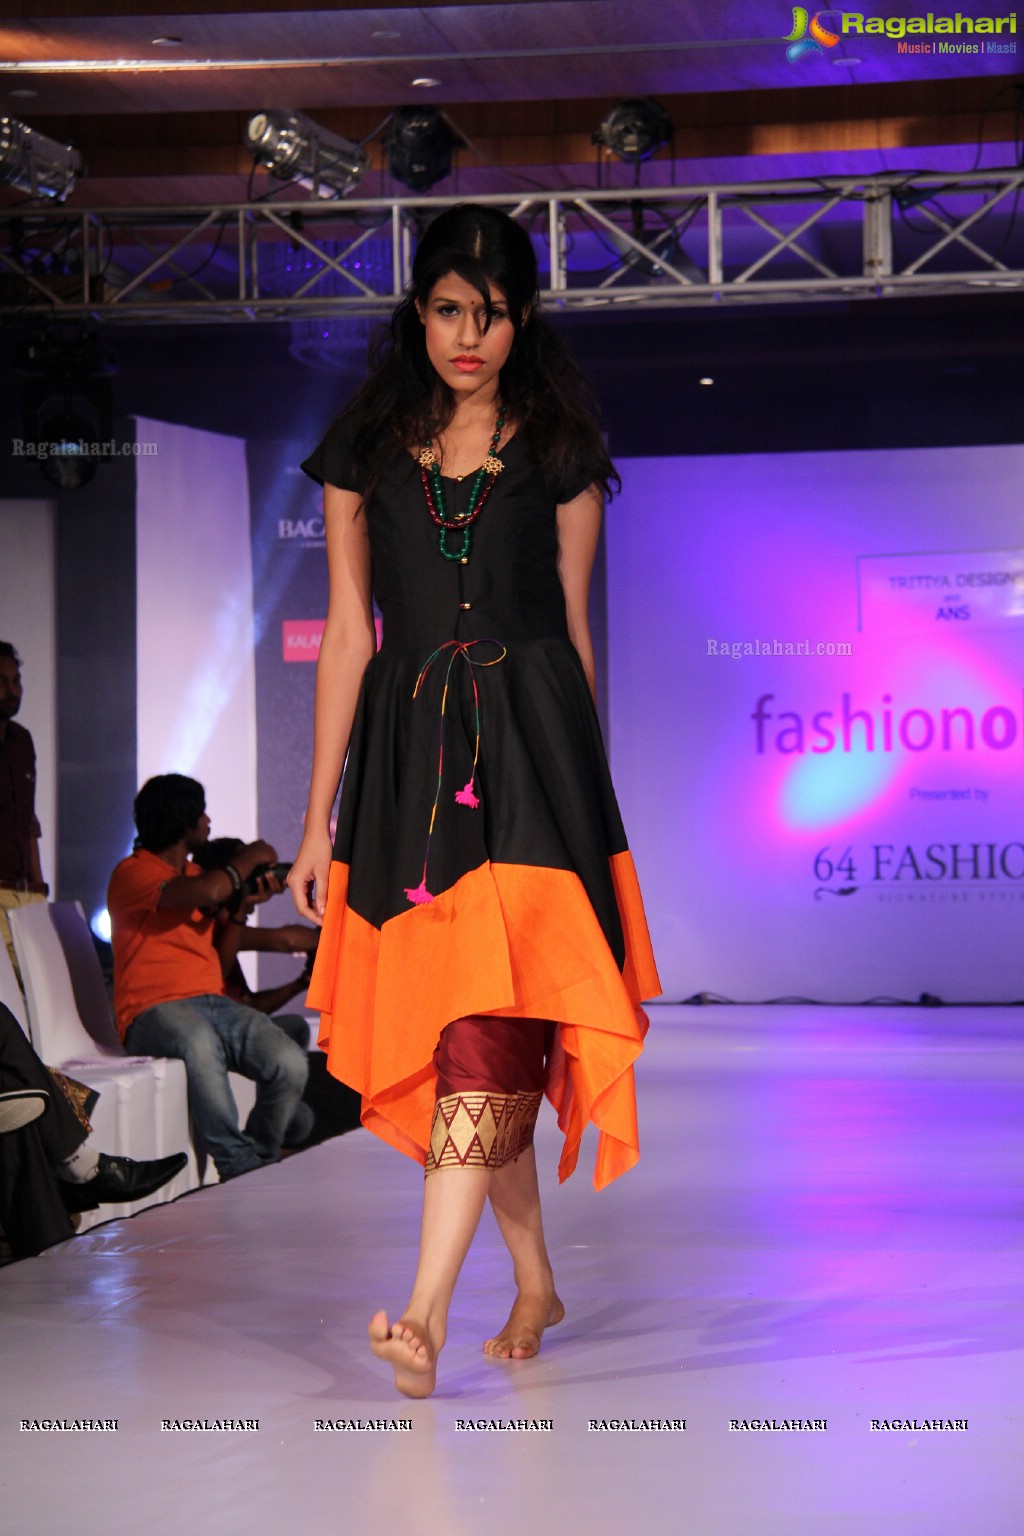 Fashionology Fashion Show by 64fashions.com